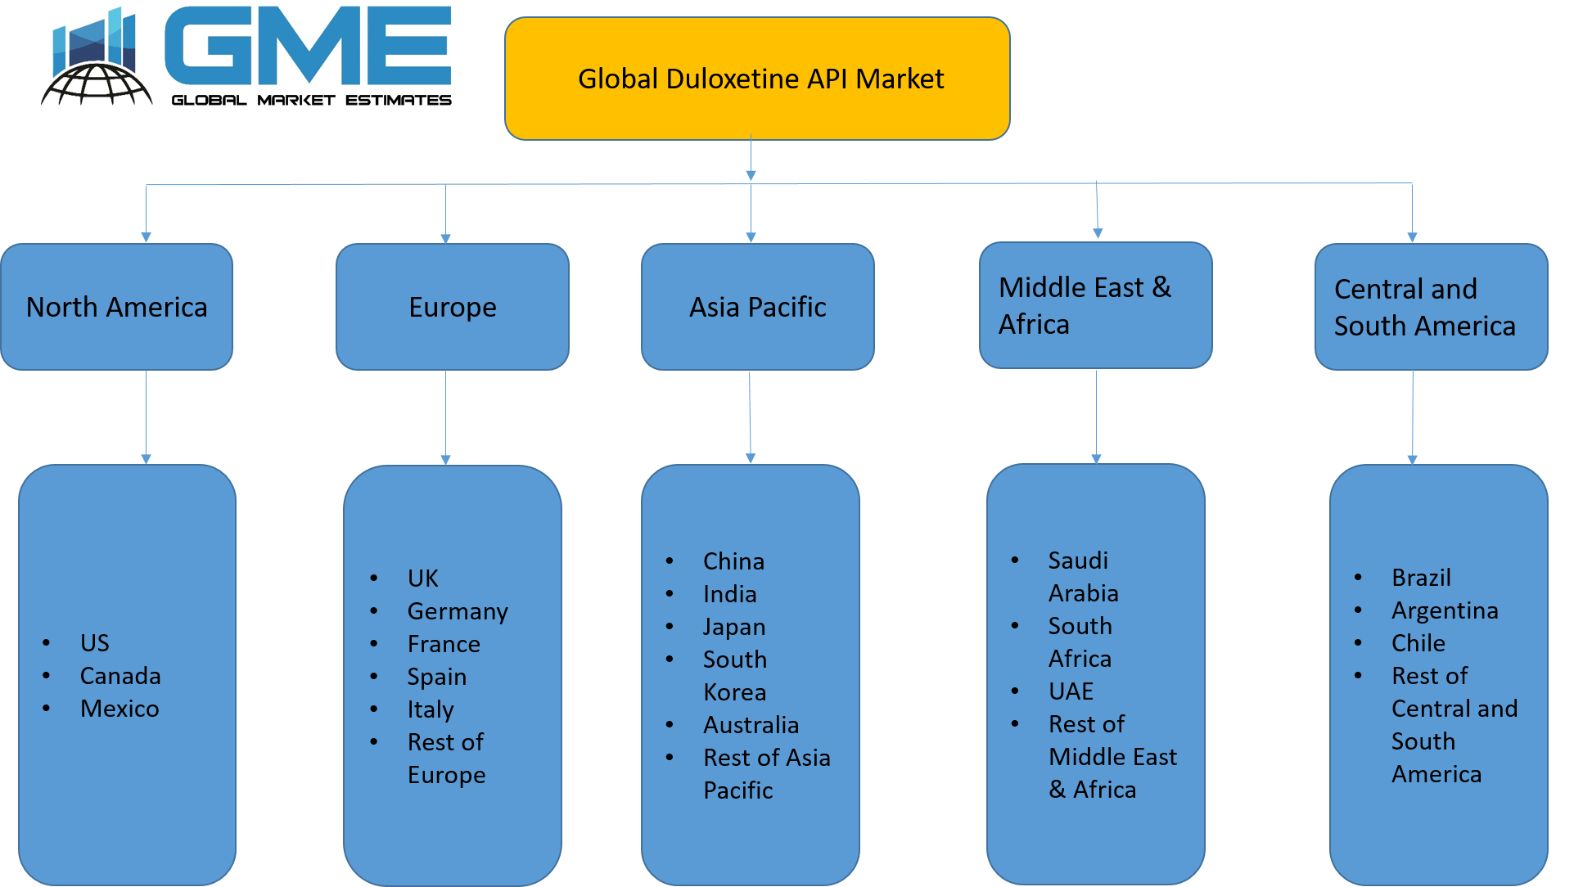 Global Duloxetine API Market - Regional Analysis